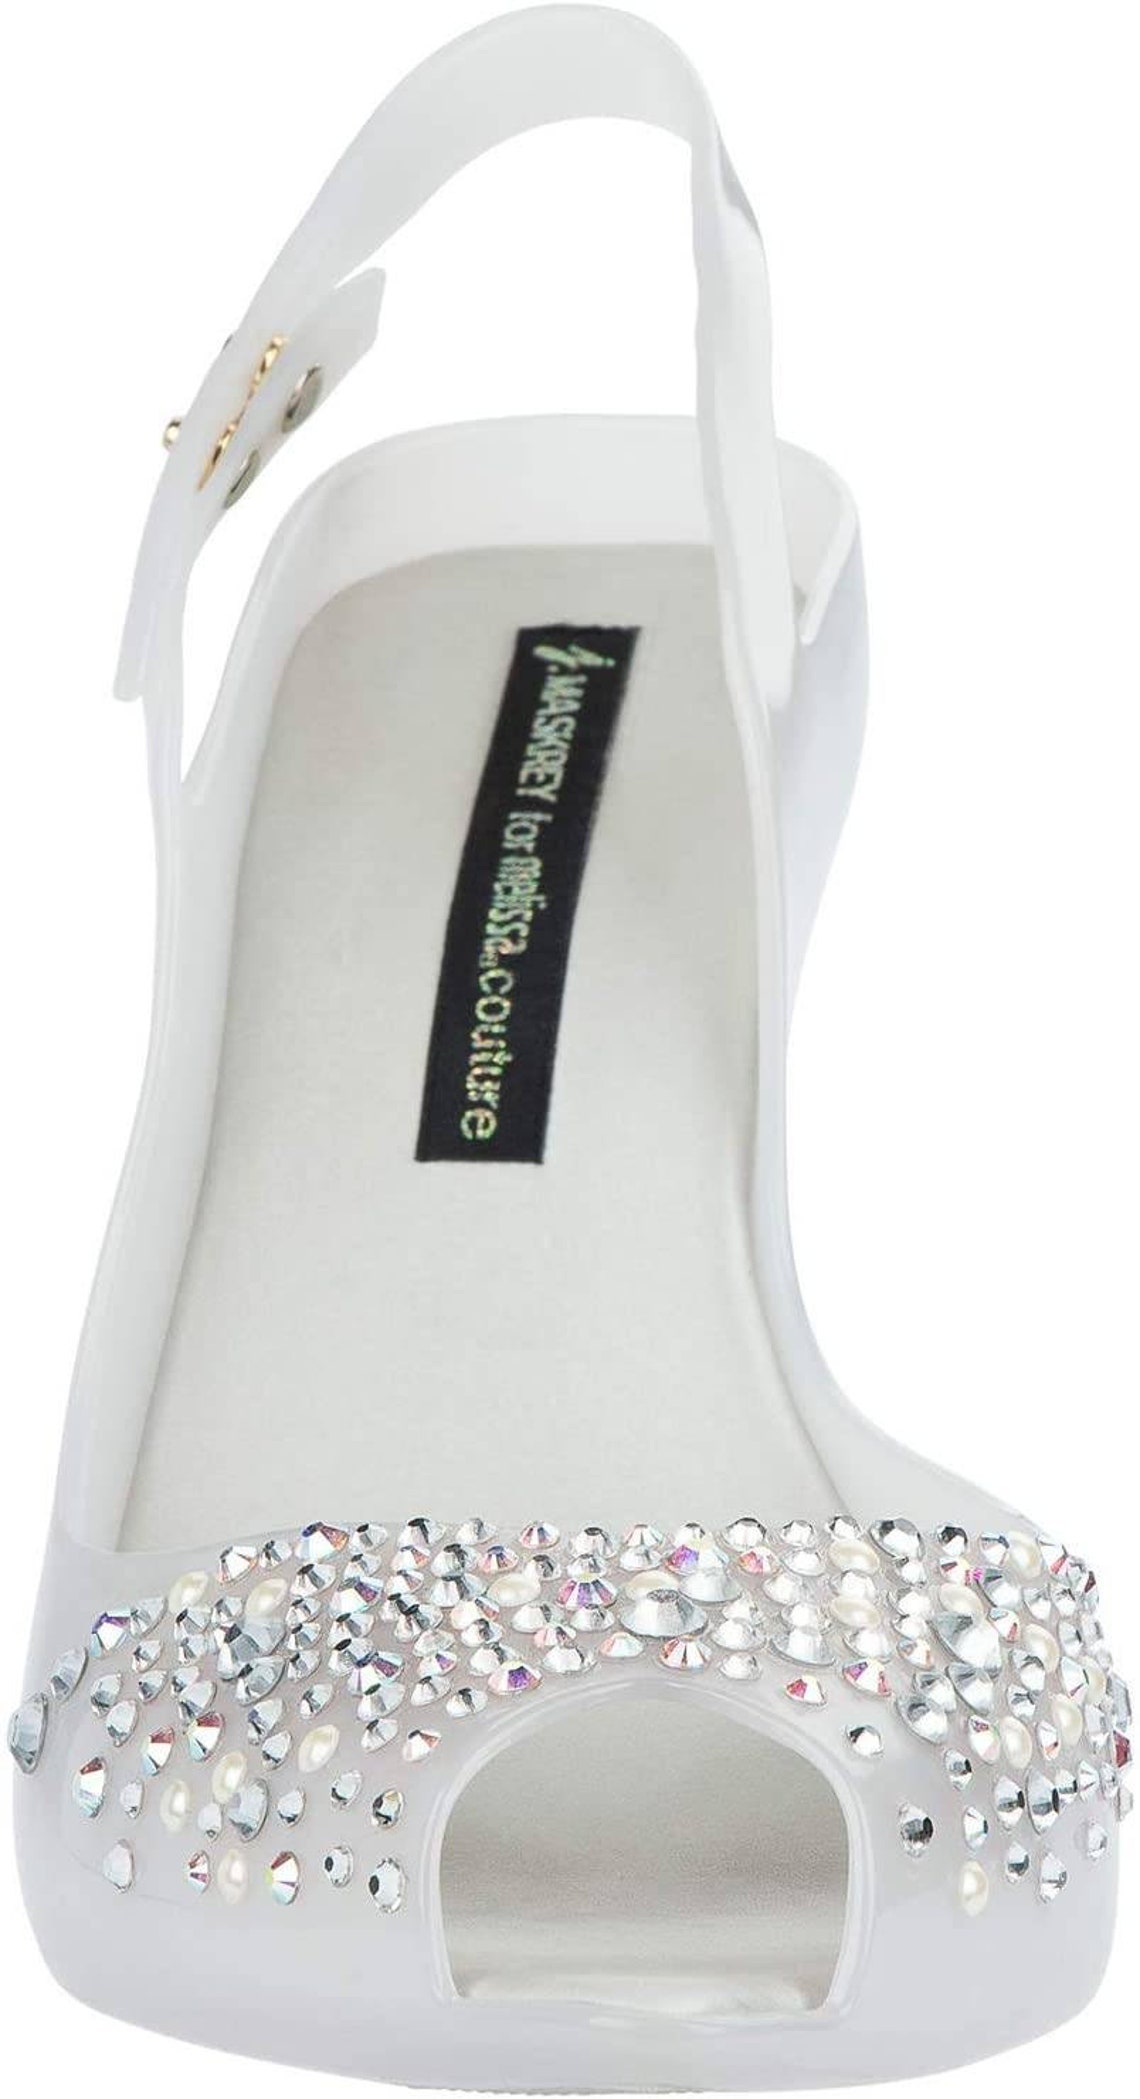 Melissa x Swarovski J Maskrey Grey with Crystals Wedding Shoes | Etsy